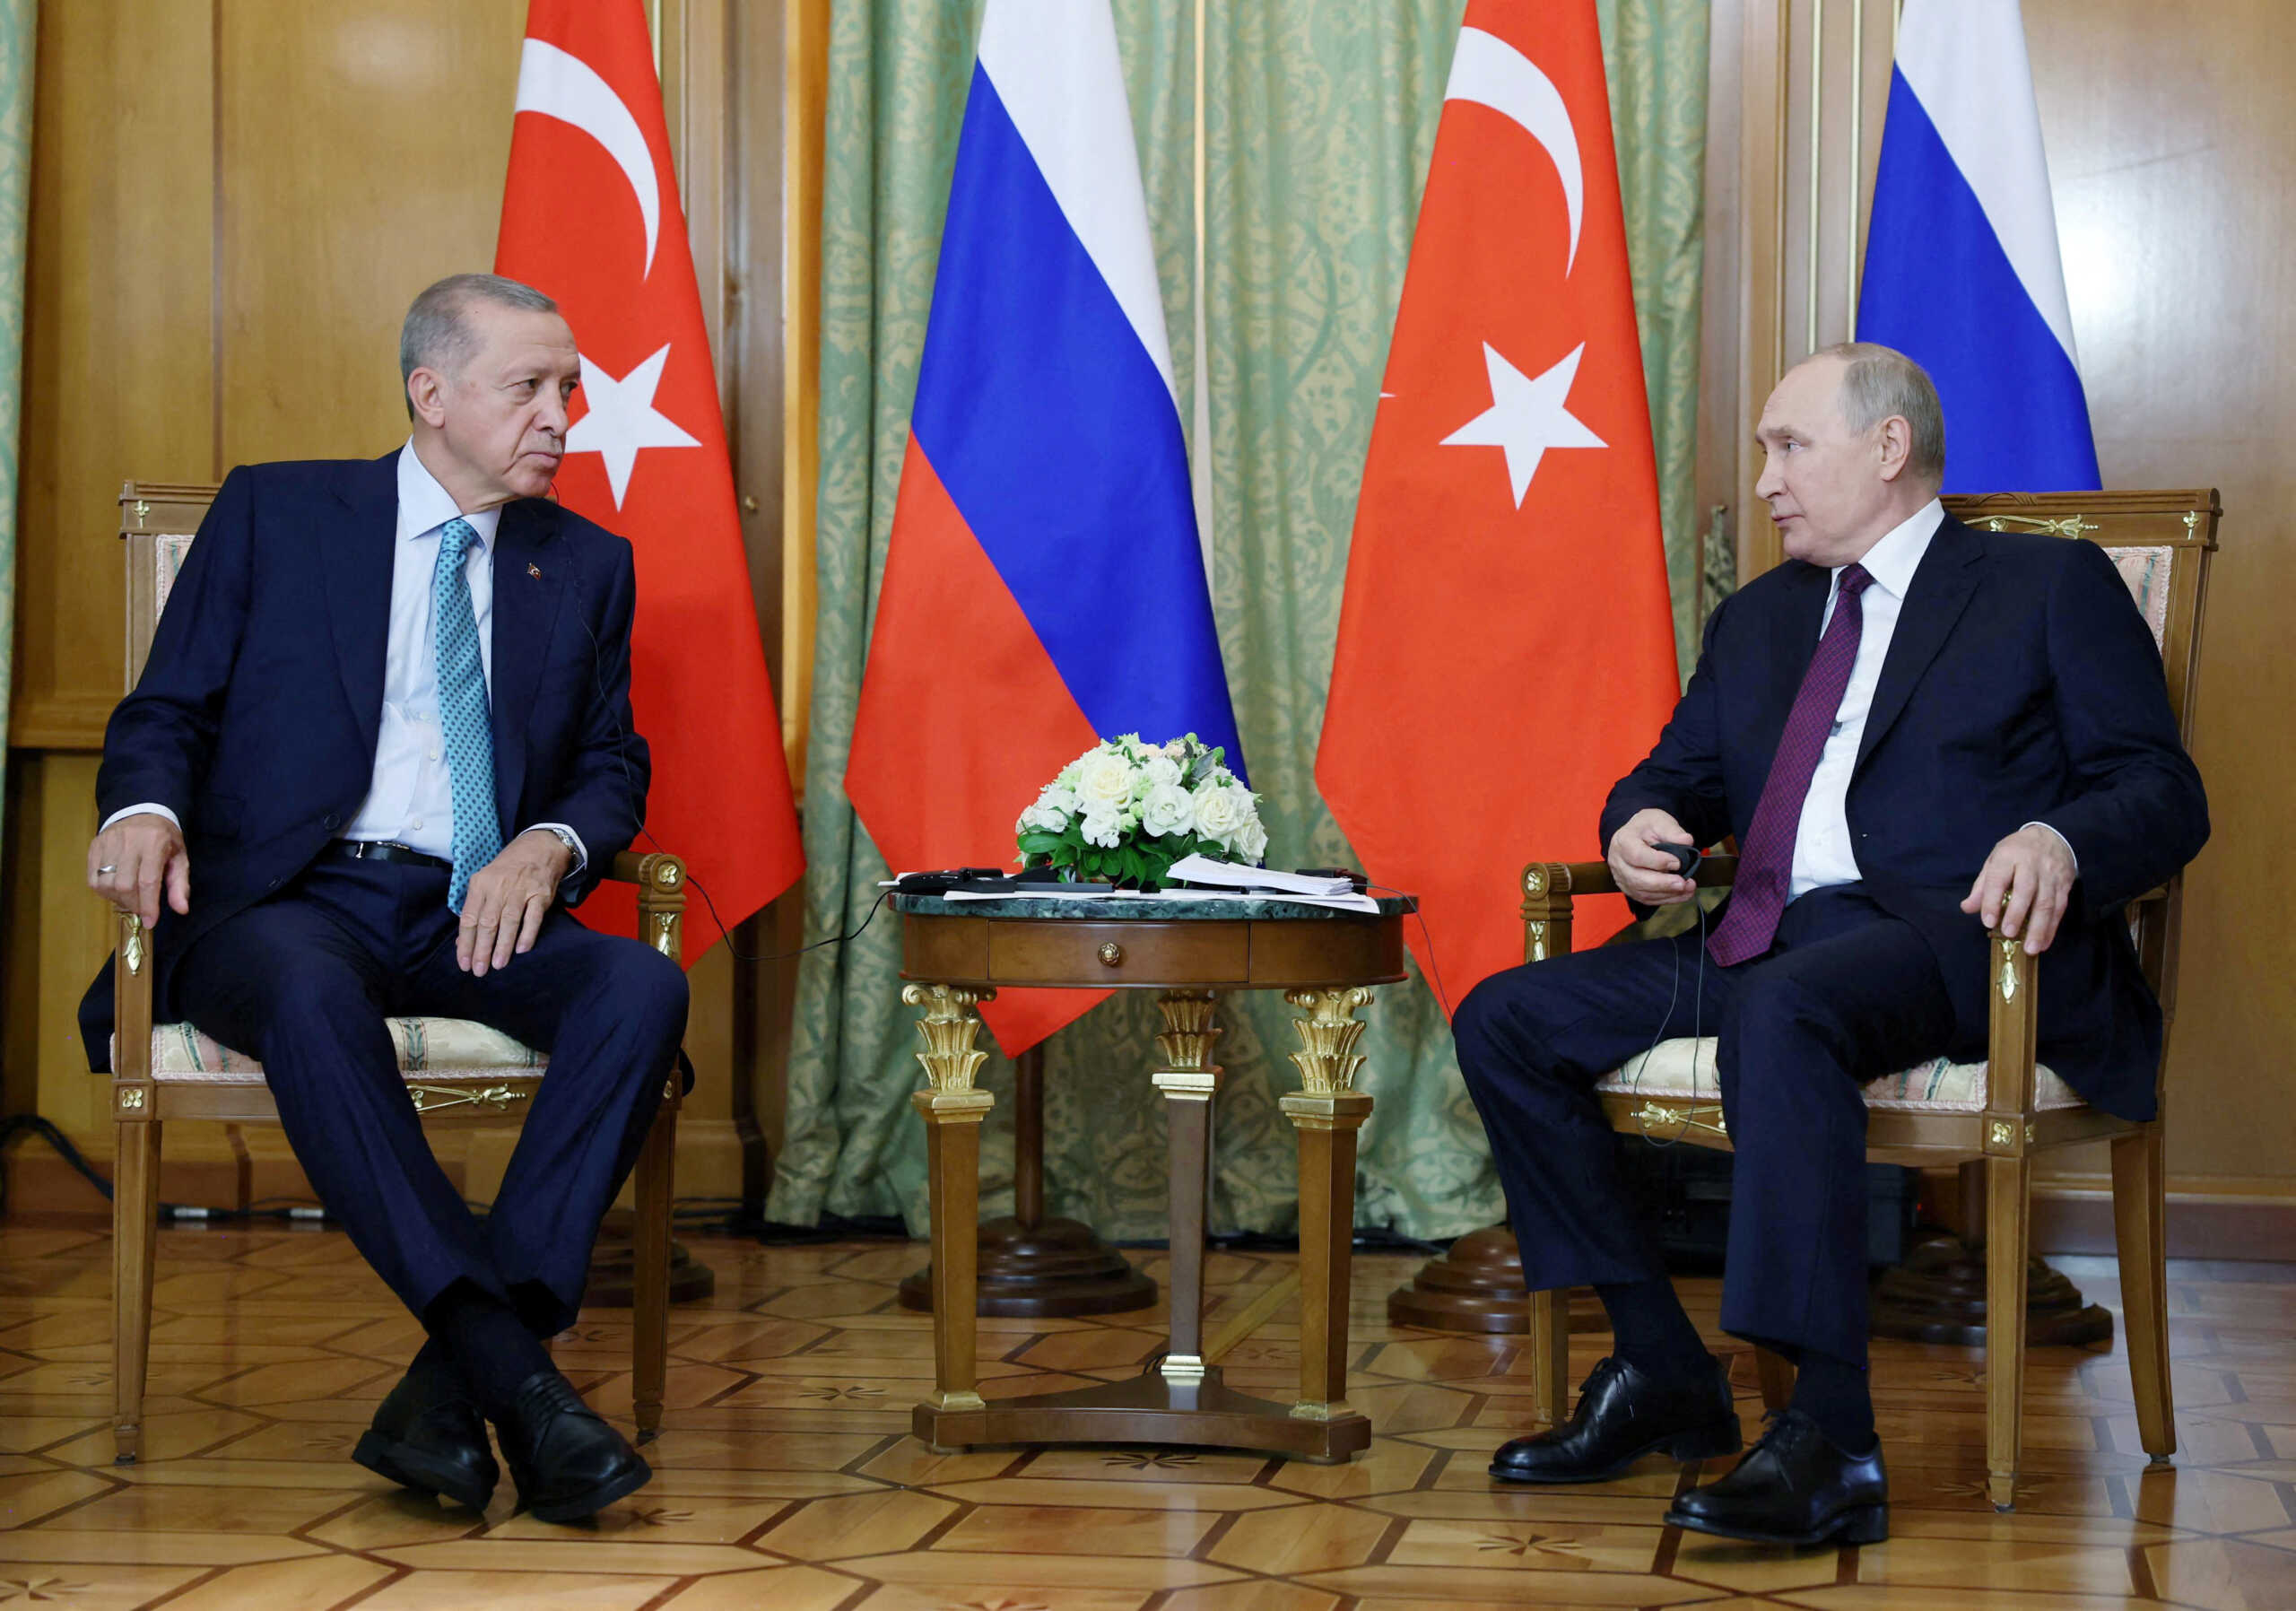 Συνάντηση Πούτιν – Ερντογάν: «Είμαστε ανοιχτοί σε συνομιλίες για τα σιτηρά», δήλωσε ο Ρώσος πρόεδρος